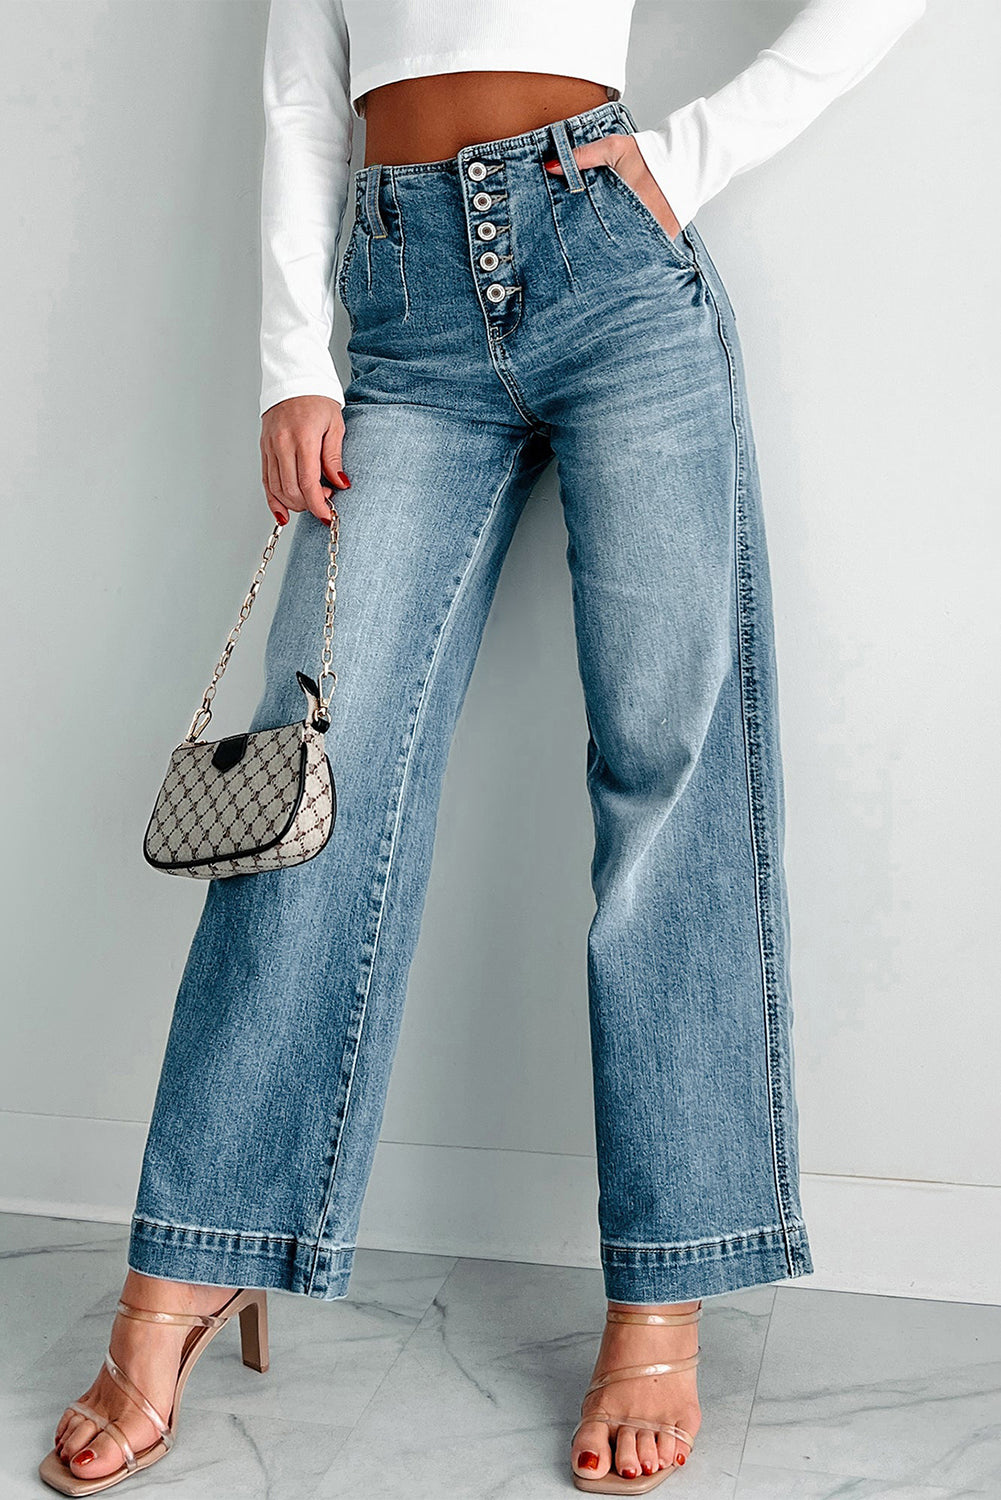 Dunkelblaue Jeans mit mehreren Knöpfen in mittlerer Waschung und geradem, lockerem Bein